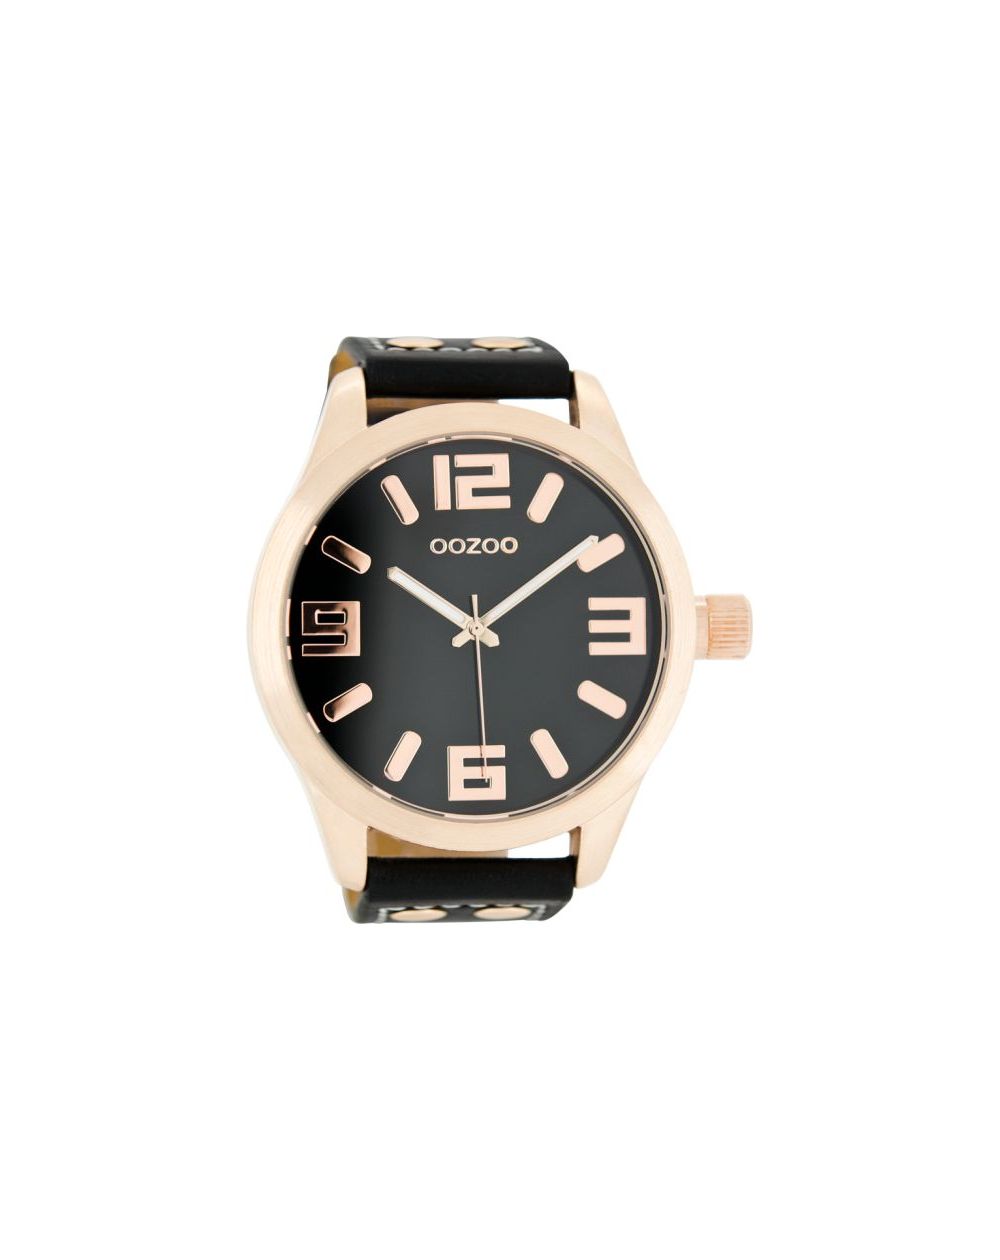 Oozoo montre/watch/horloge C1109